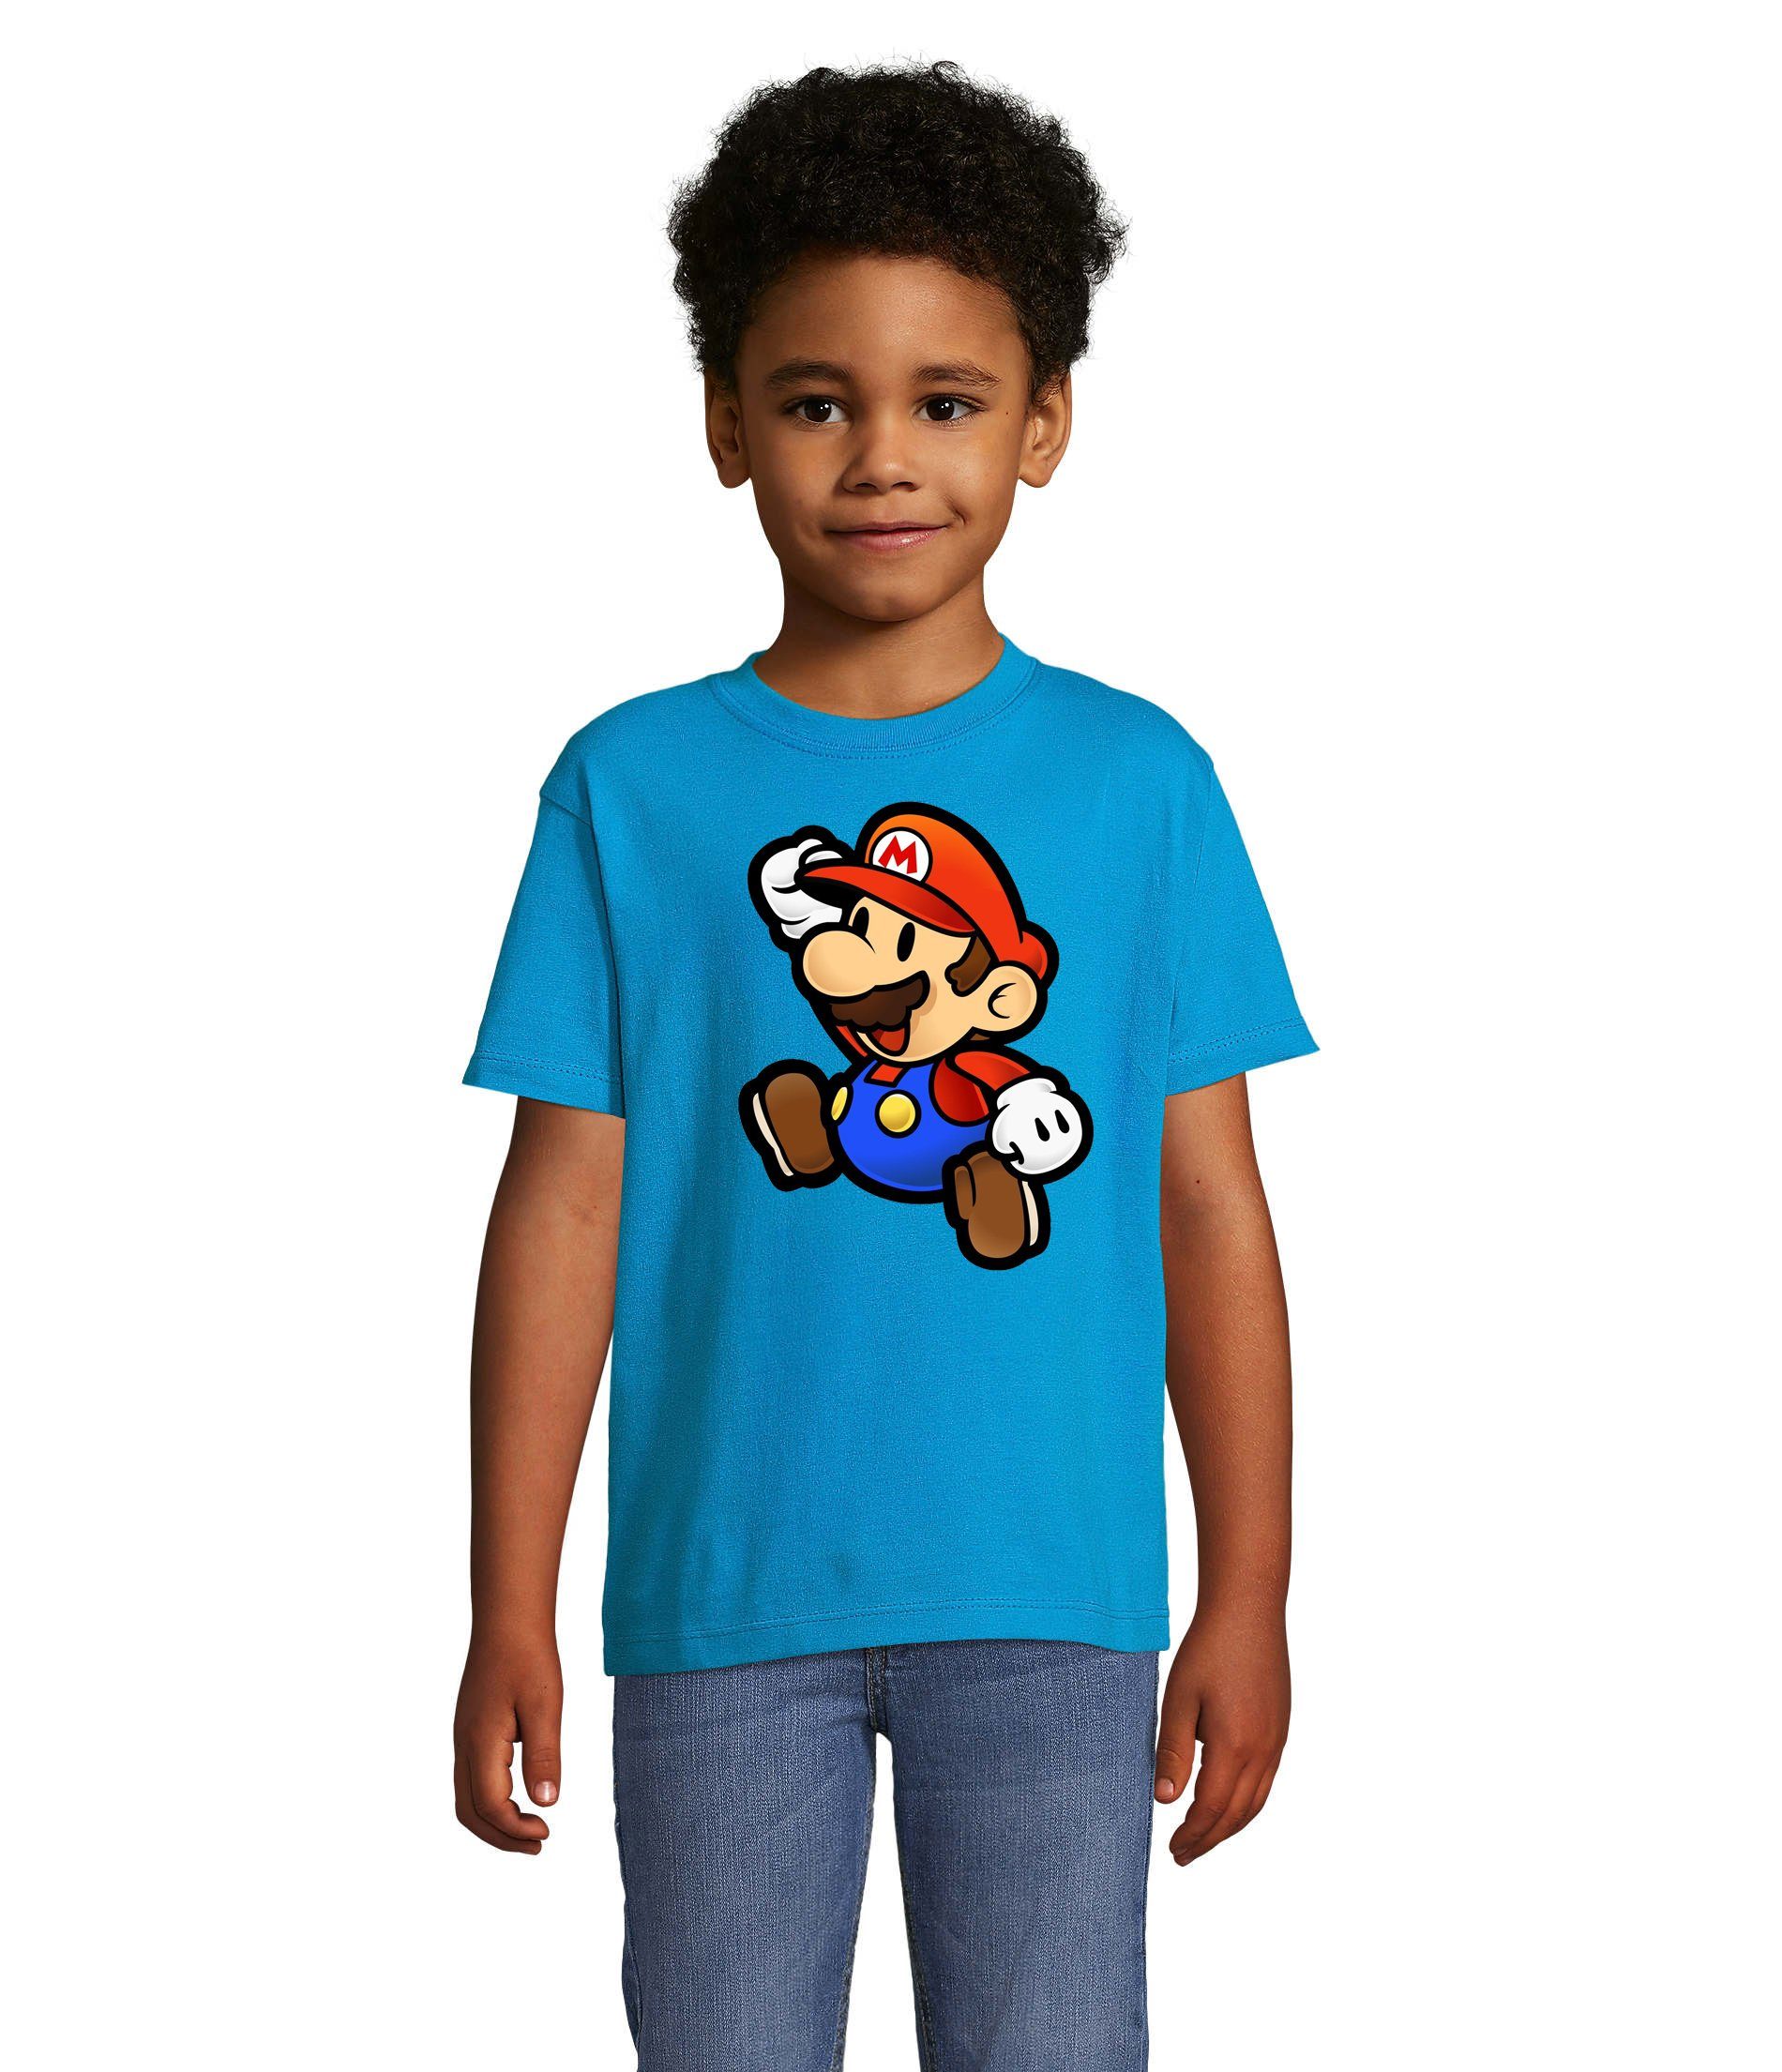 Blondie & Brownie T-Shirt Kinder Jungen & Mädchen Mario Nintendo Gaming Luigi Yoshi Super in vielen Farben Blau